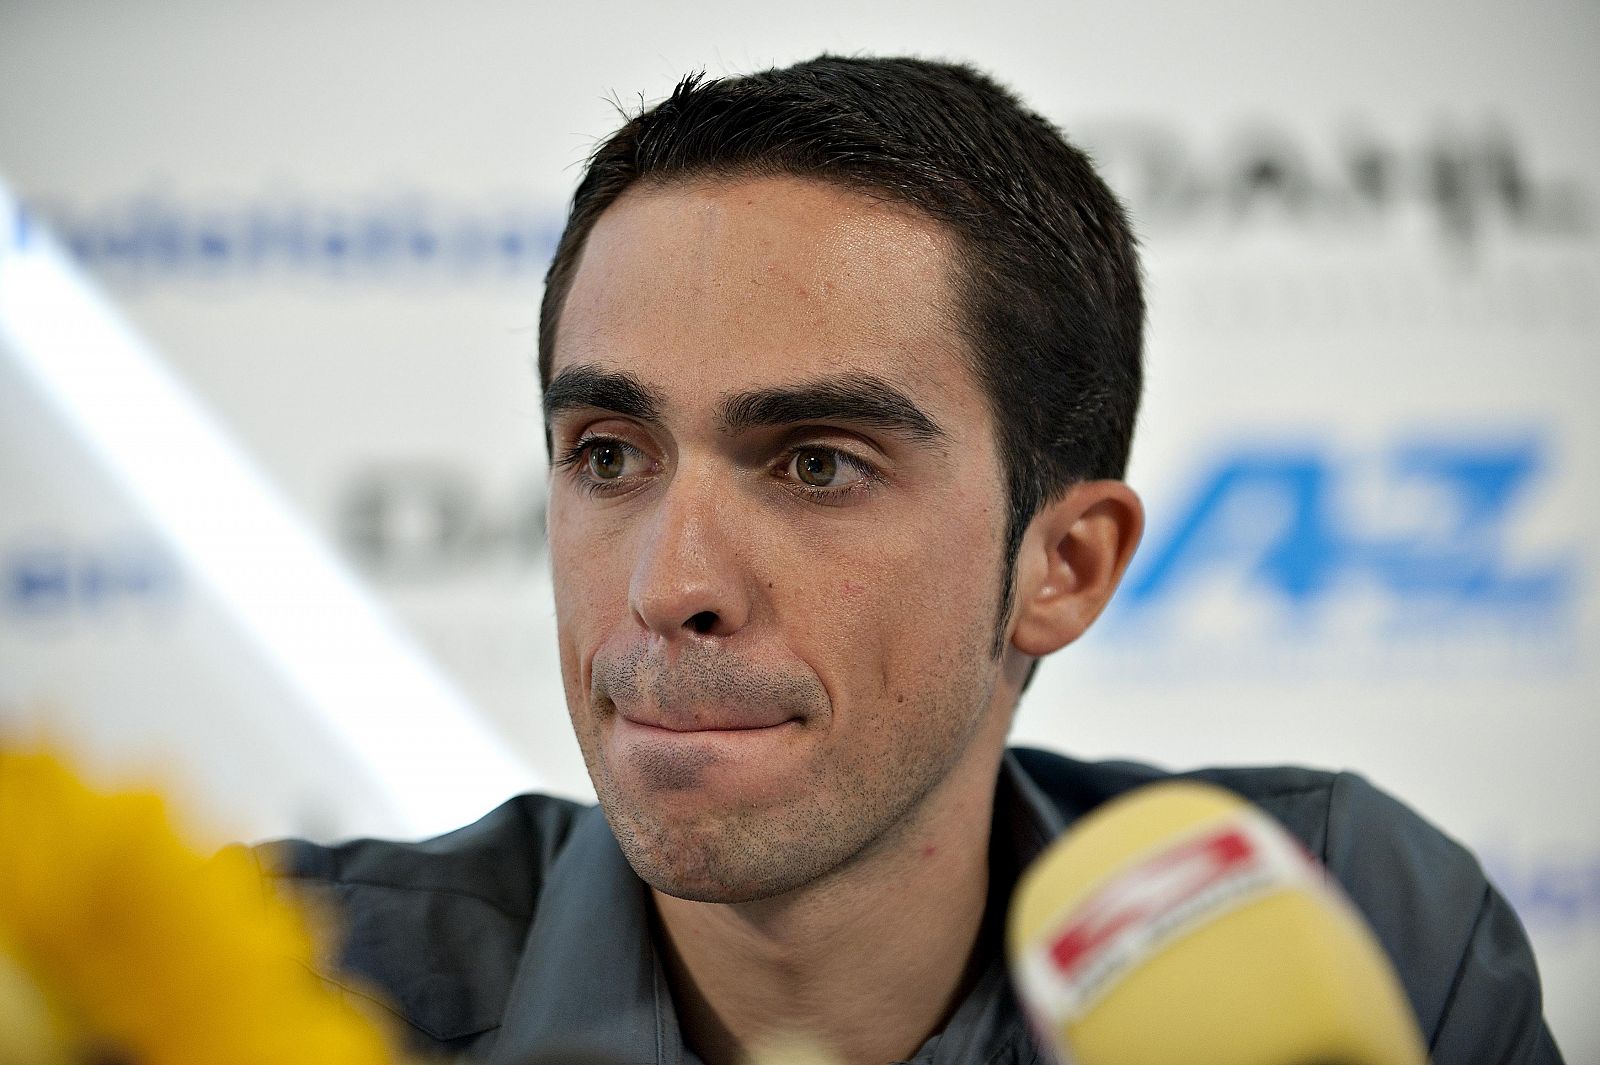 El ciclista de Pinto, Alberto Contador, atiende a los medios de comunicación en una imagen de archivo.